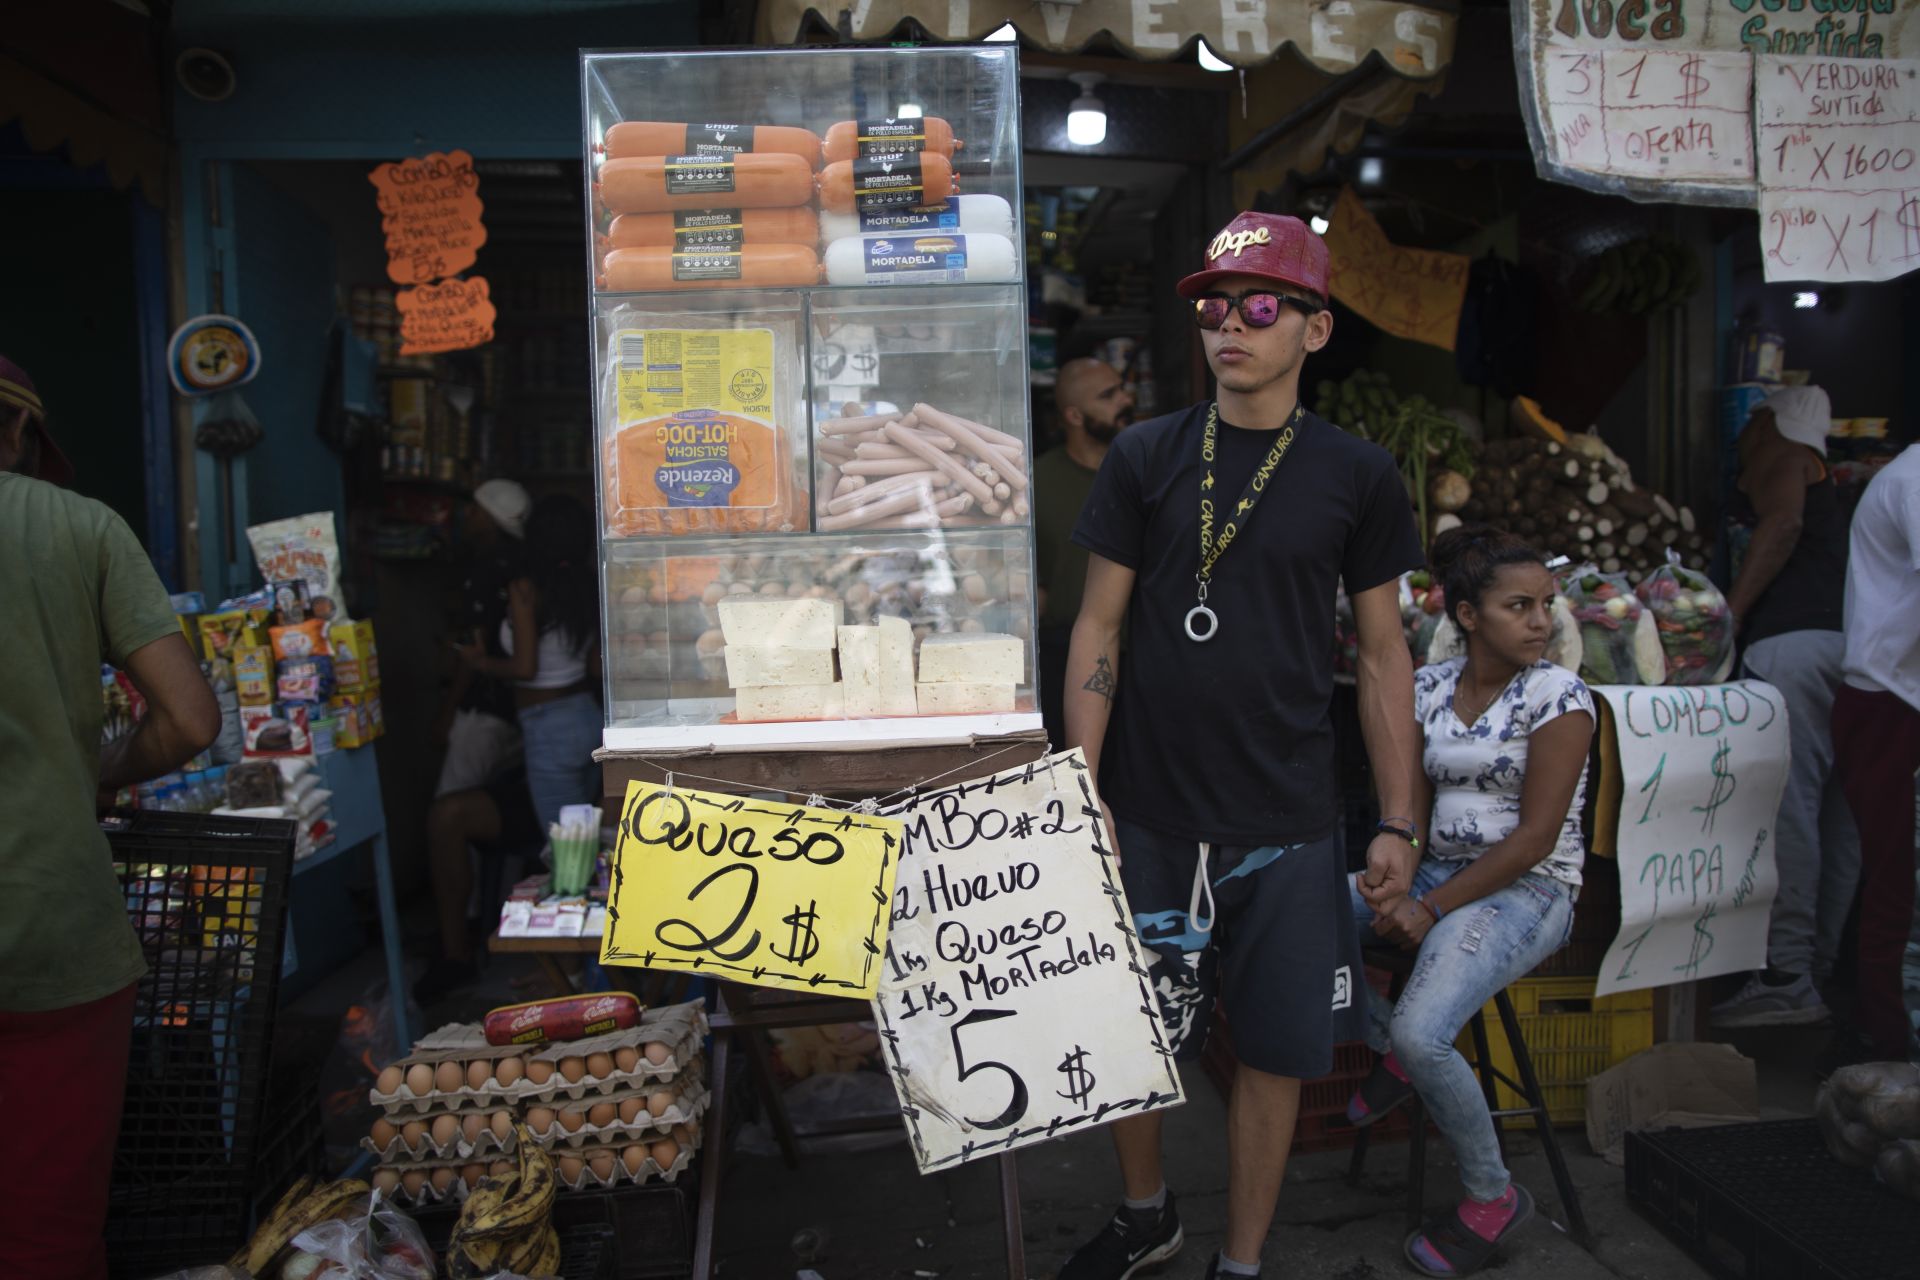  11 юни 2021 година - Промоции на сирене, яйца и мортадела на пазар в Каракас, Венецуела. Южноамериканската страна пробва да излезе от тежката иикономическа рецесия, довела до дефицит на редица артикули. 